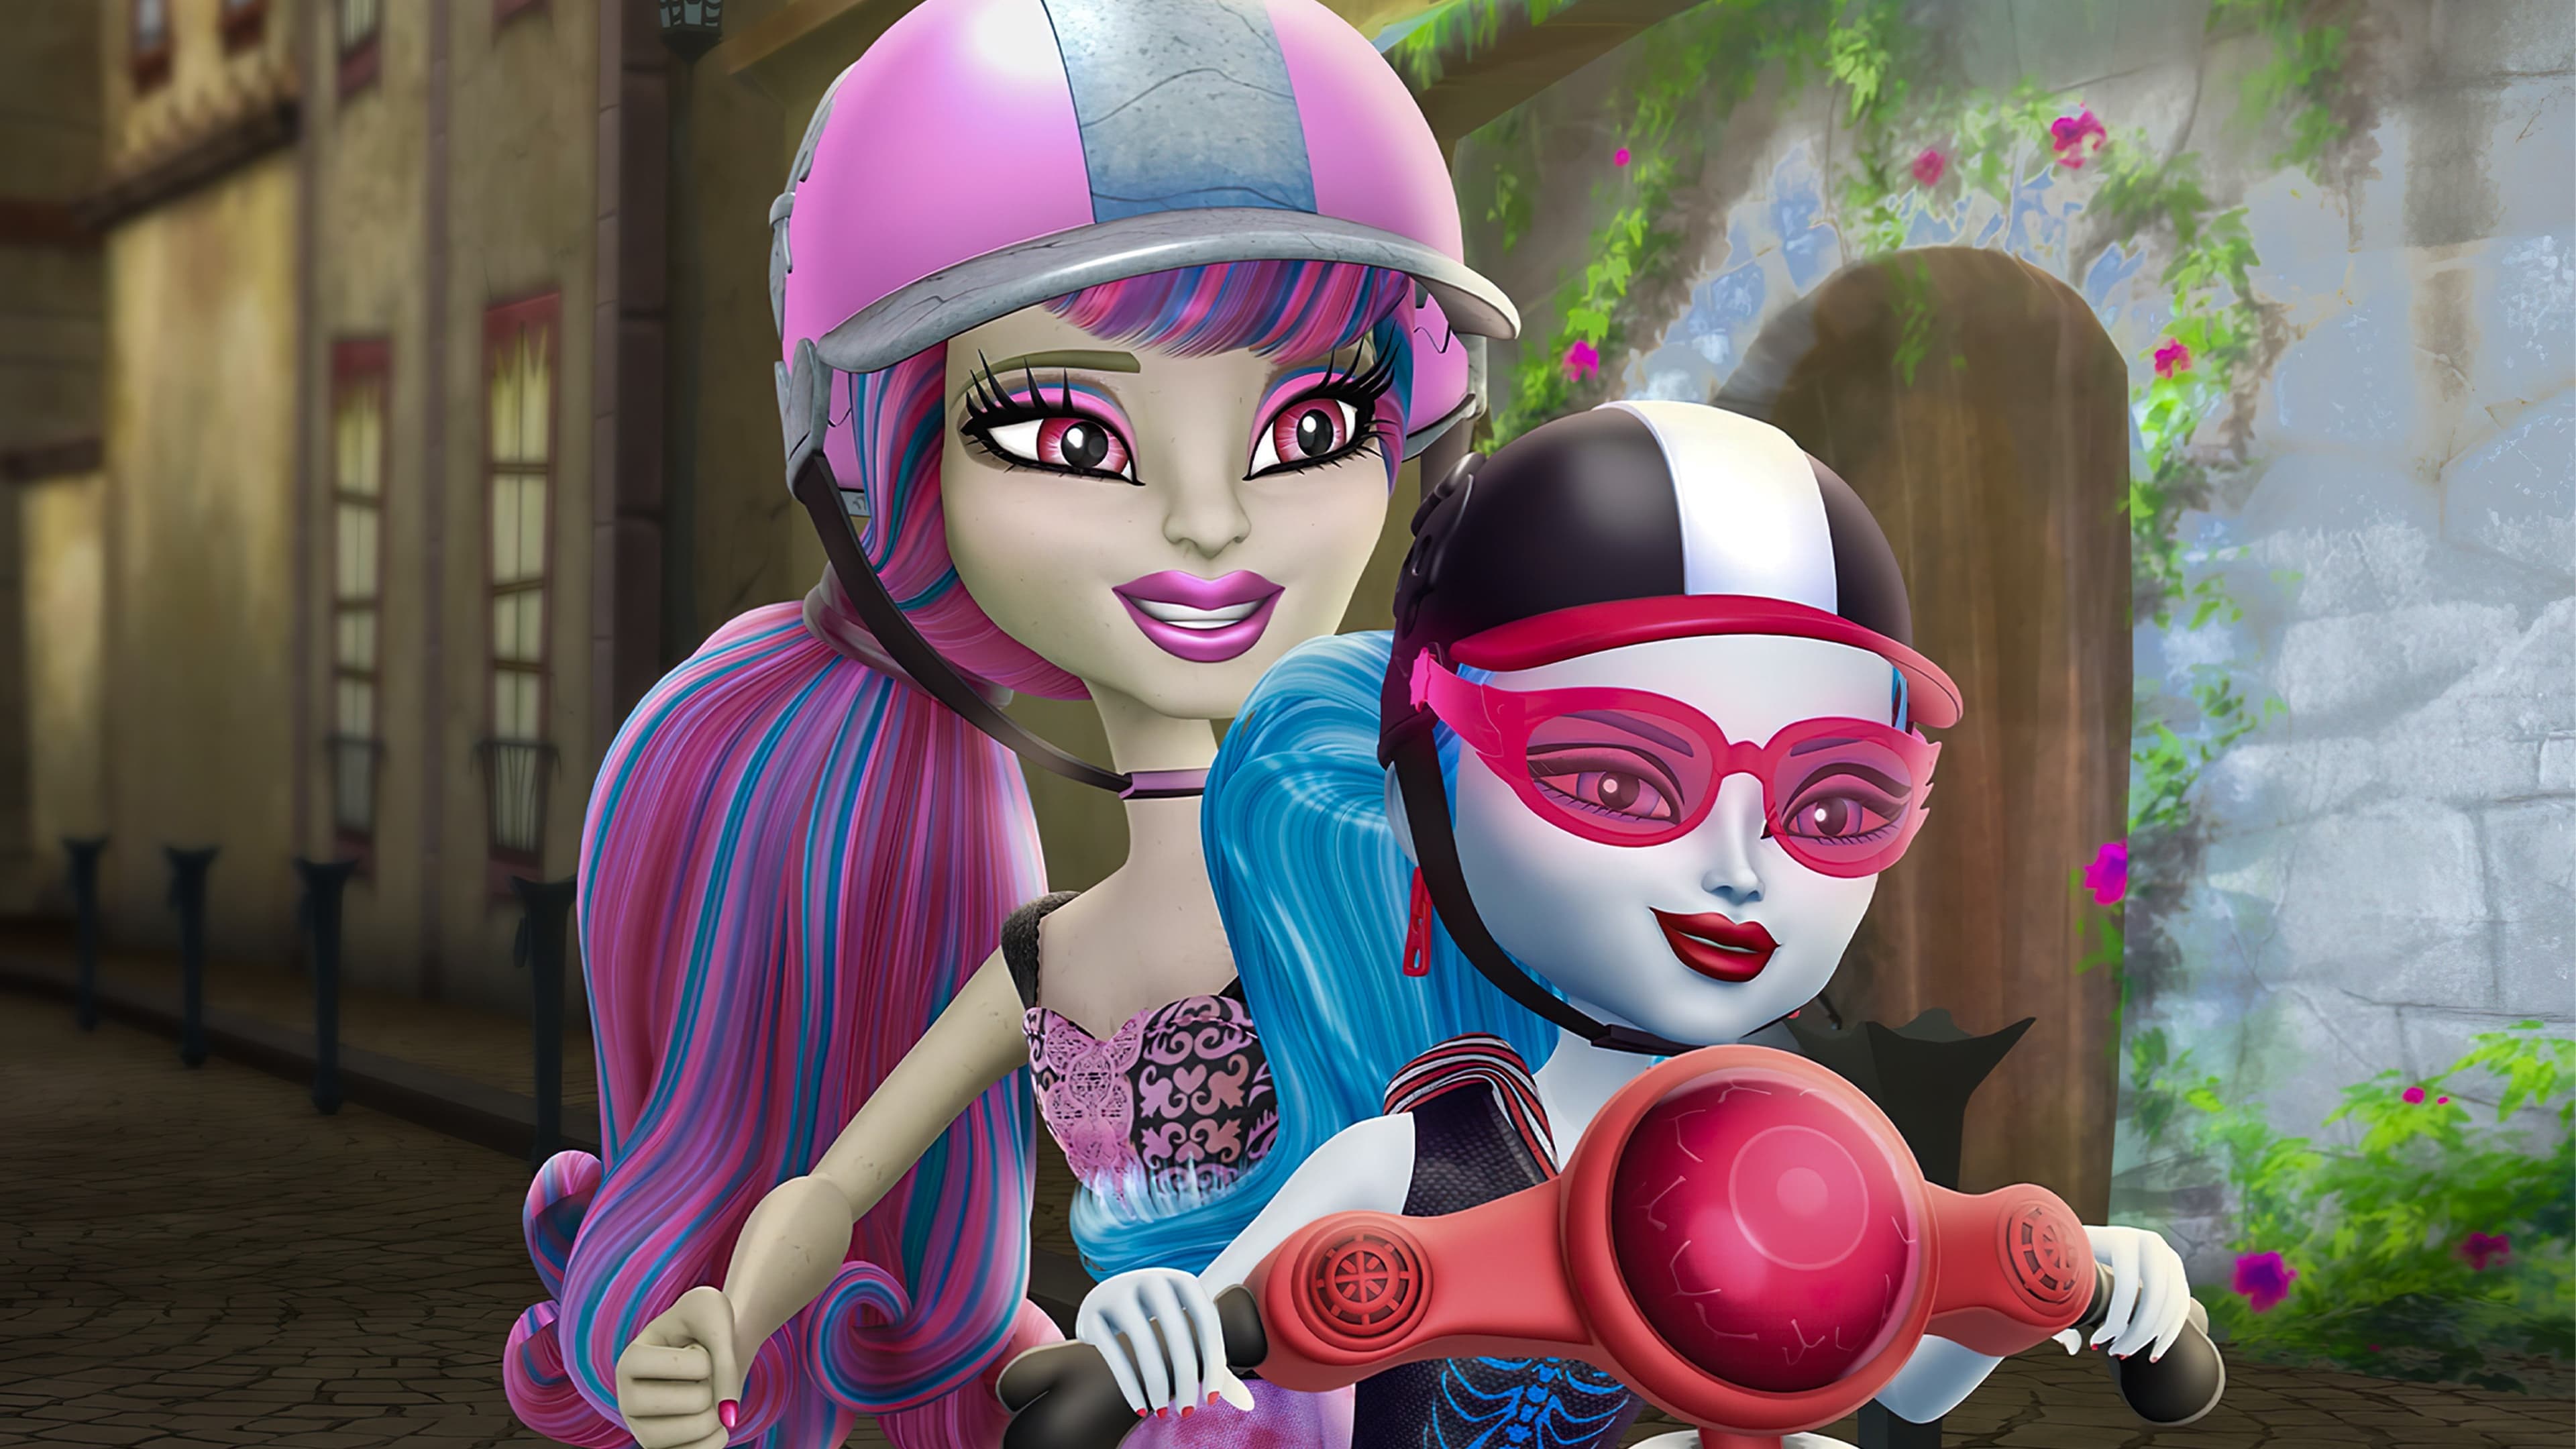 Monster High: Scaris - skräckens stad